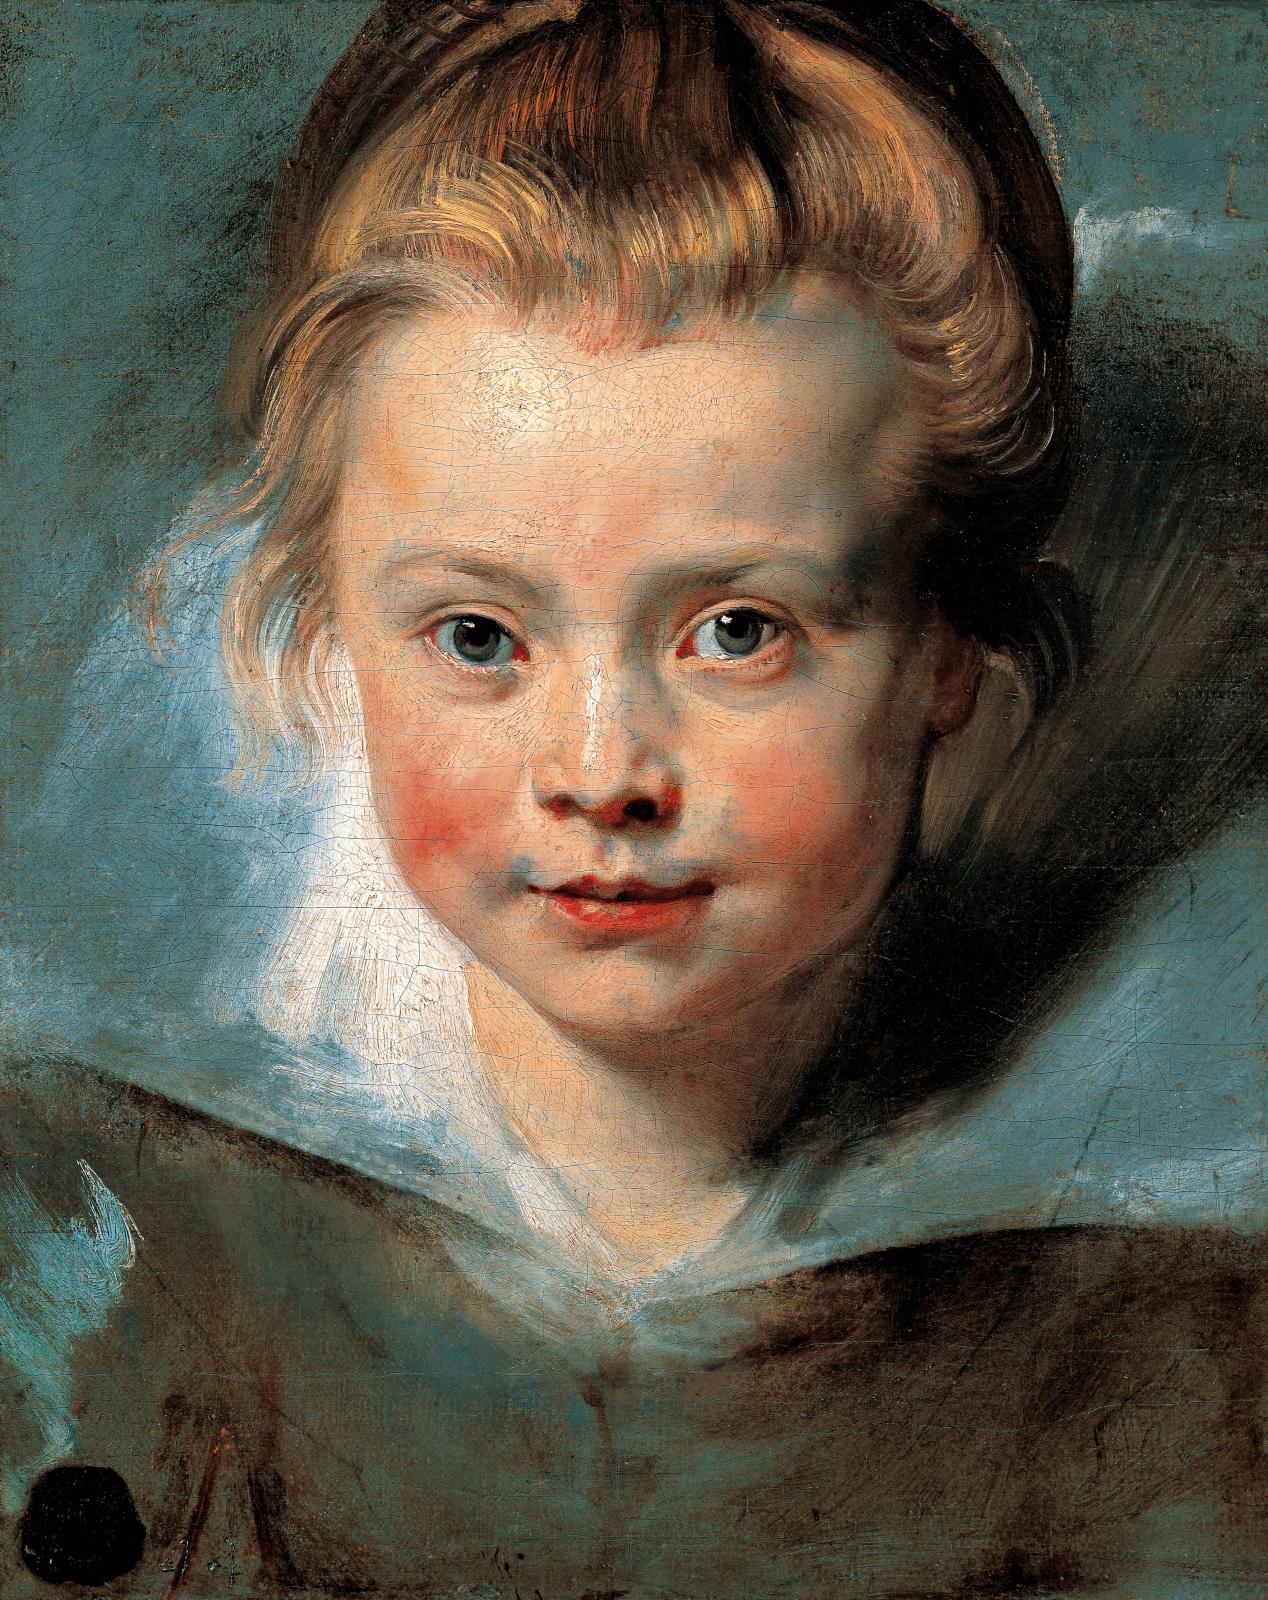 Pierre Paul Rubens (1577-1640), Portrait de Clara Serena Rubens, vers 1616, huile sur toile, 25,5 x 32,2 cm, Vaduz, collections princières